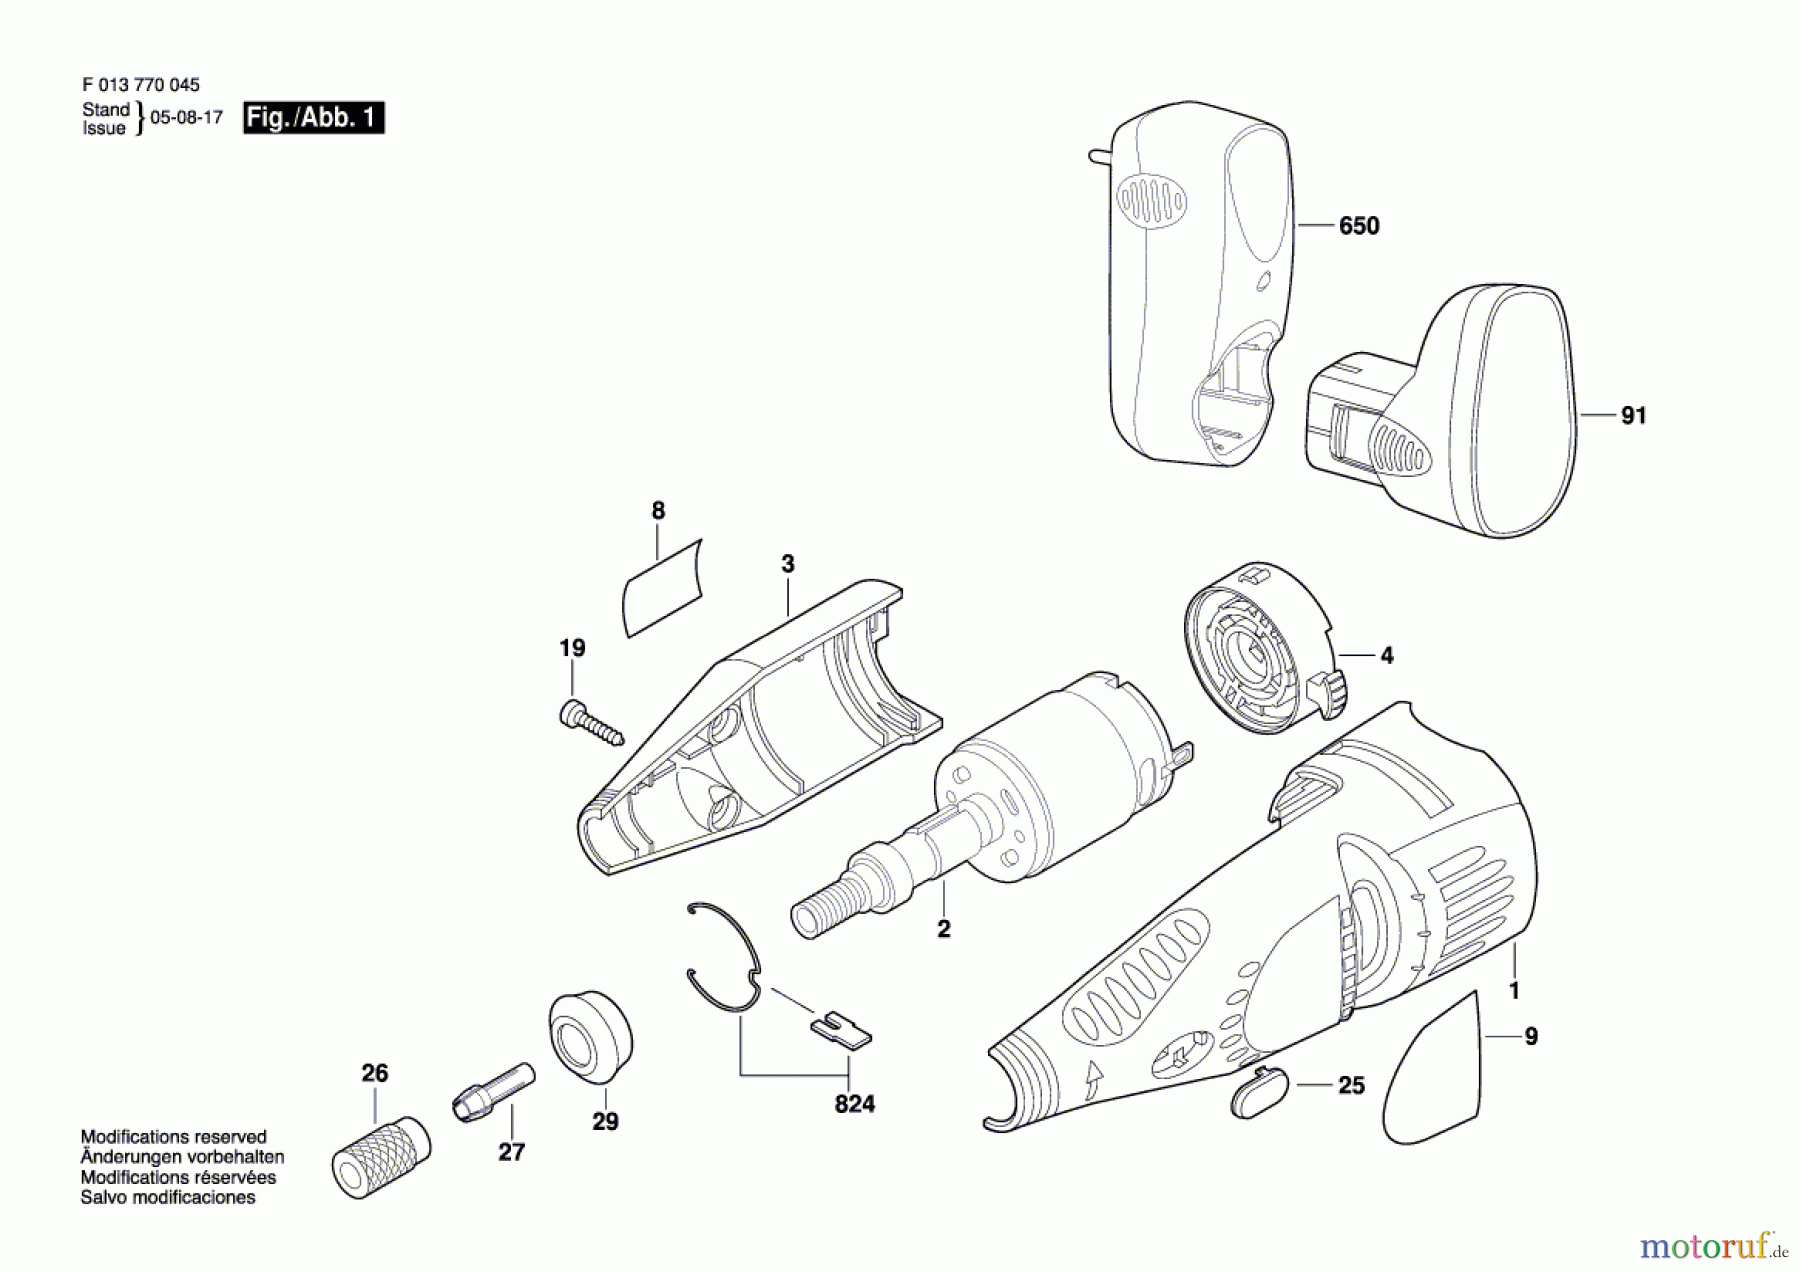  Bosch Werkzeug Drehwerkzeug 7700 Seite 1